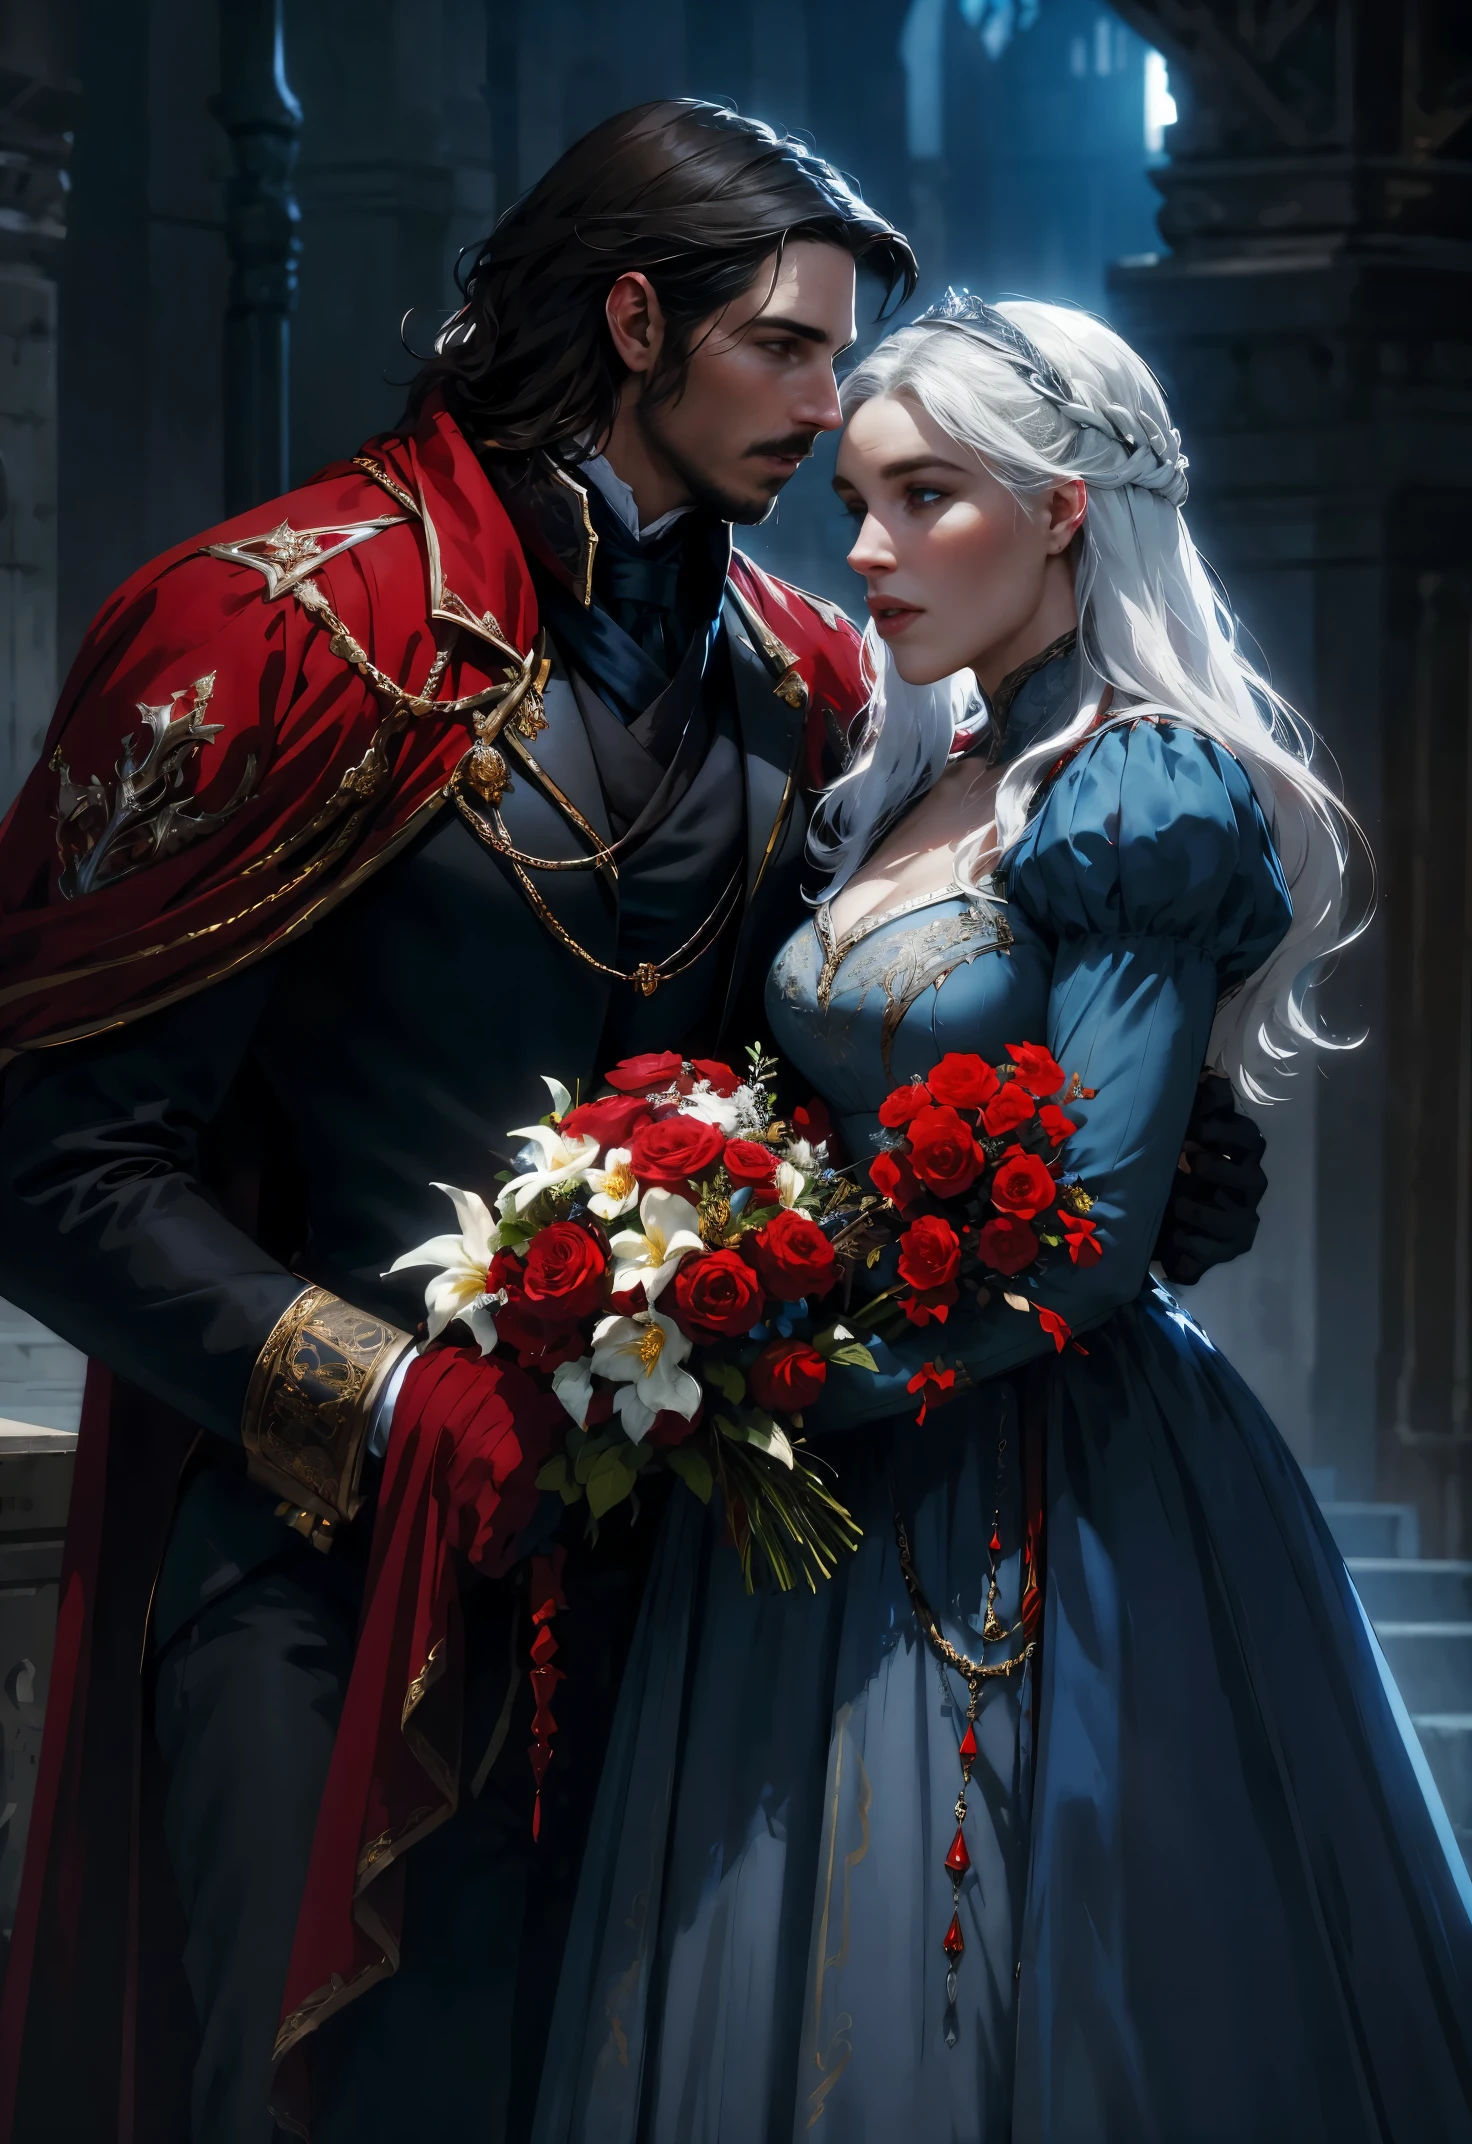 fantaisie, rouge, noir, Tons bleus et blancs, fleurs, un homme et une femme s&#39;embrassant, un homme ressemble à Christian Bale, dans un uniforme royal du 19ème siècle, une femme ressemble à Daenerys, dans une robe royale du 19ème siècle, HD